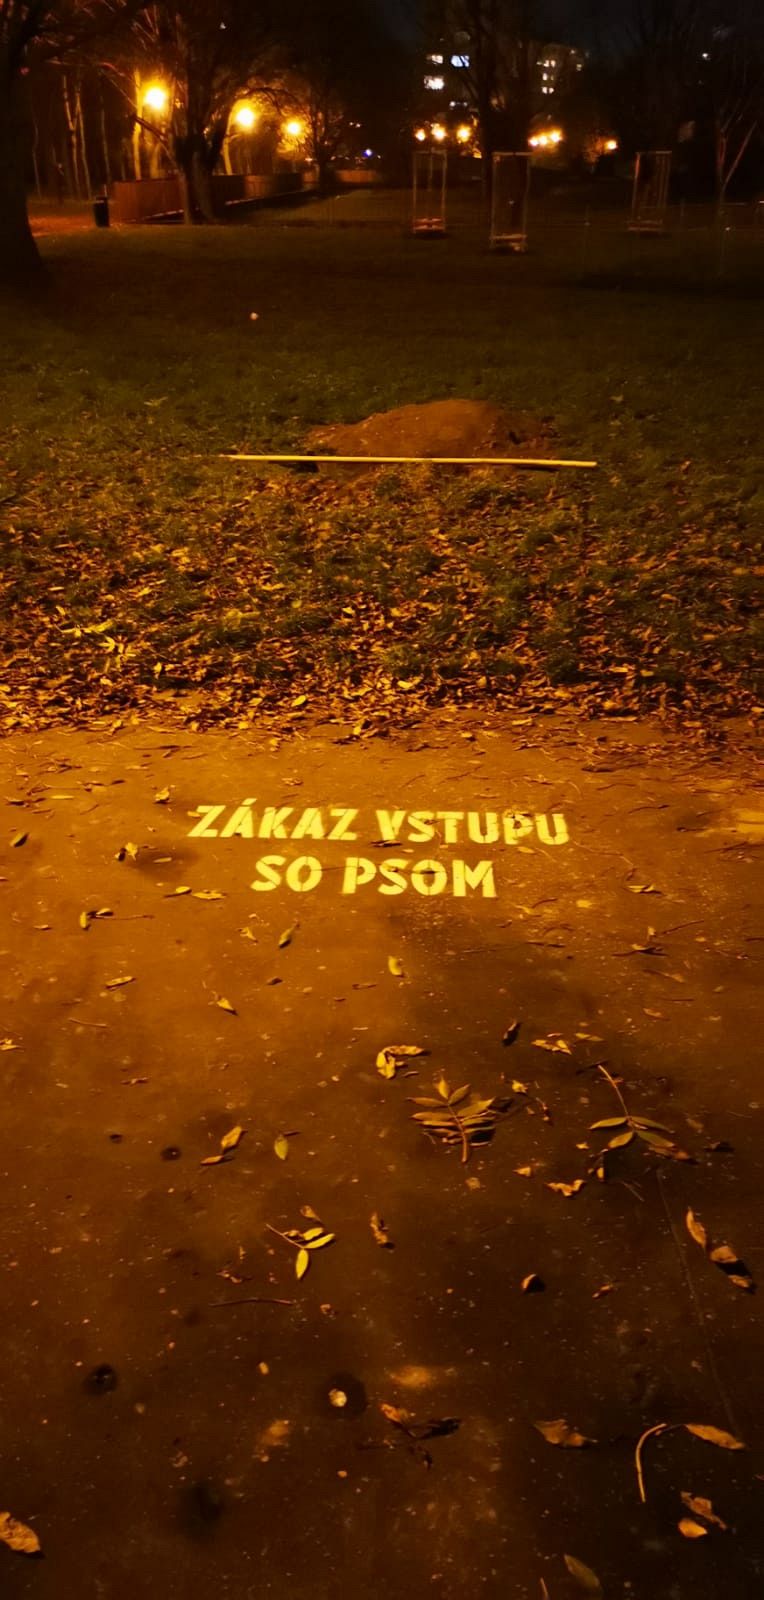 Šintavská - označenia "zákaz vstupu so psom", Petržalka, Bratislava |  Odkazprestarostu.sk